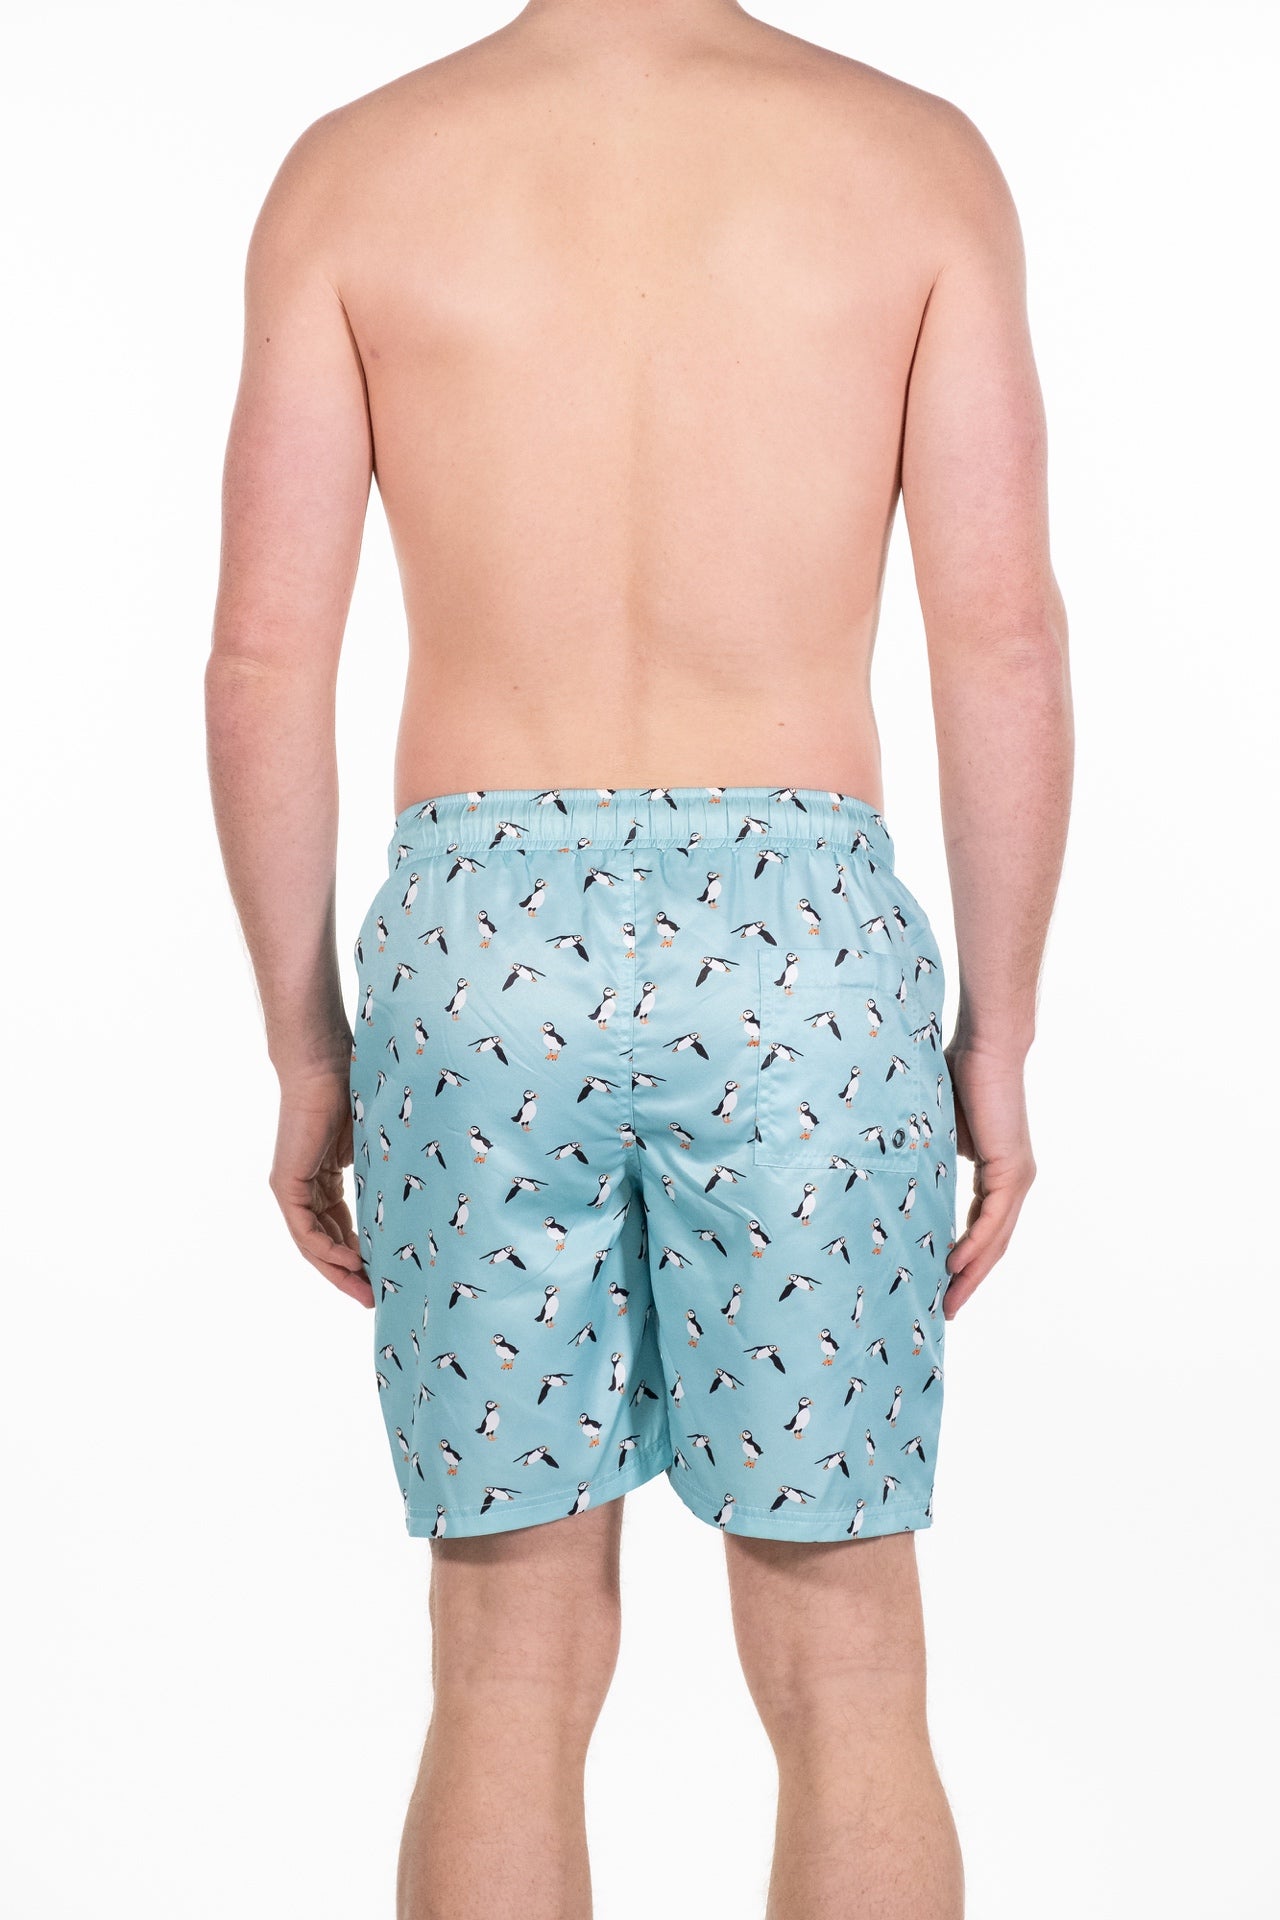 Arlo Puffin Print Swim Shorts - Rupert and Buckley - Swin Shorts